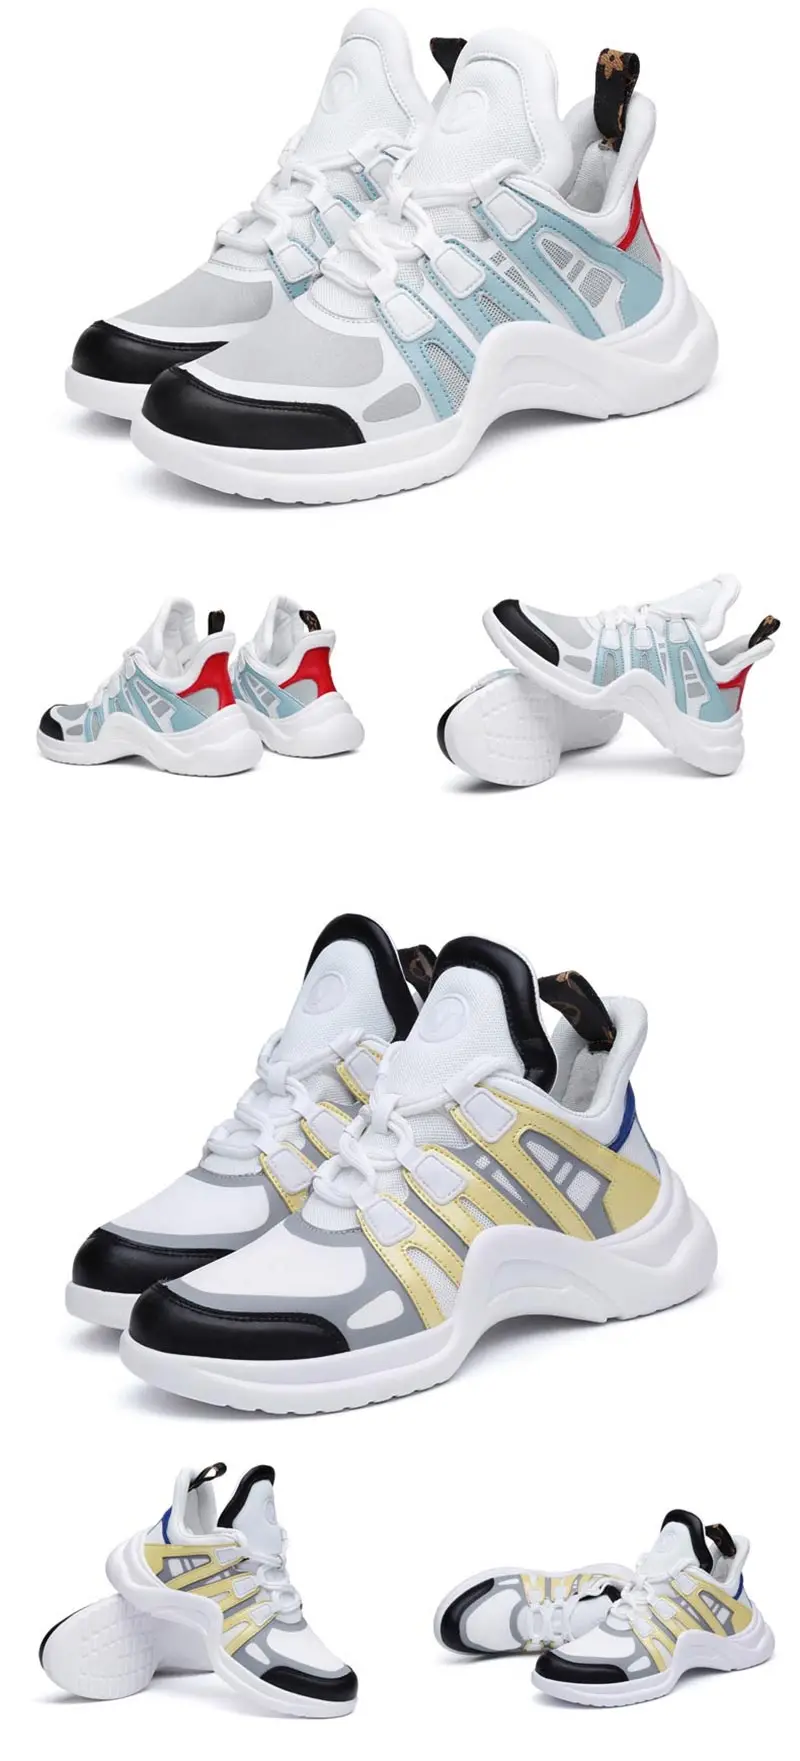 Comemore/Летняя женская спортивная обувь; коллекция года; женские кроссовки; женская обувь для бега; спортивная женская обувь для тенниса с высоким берцем; прогулочная обувь белого цвета